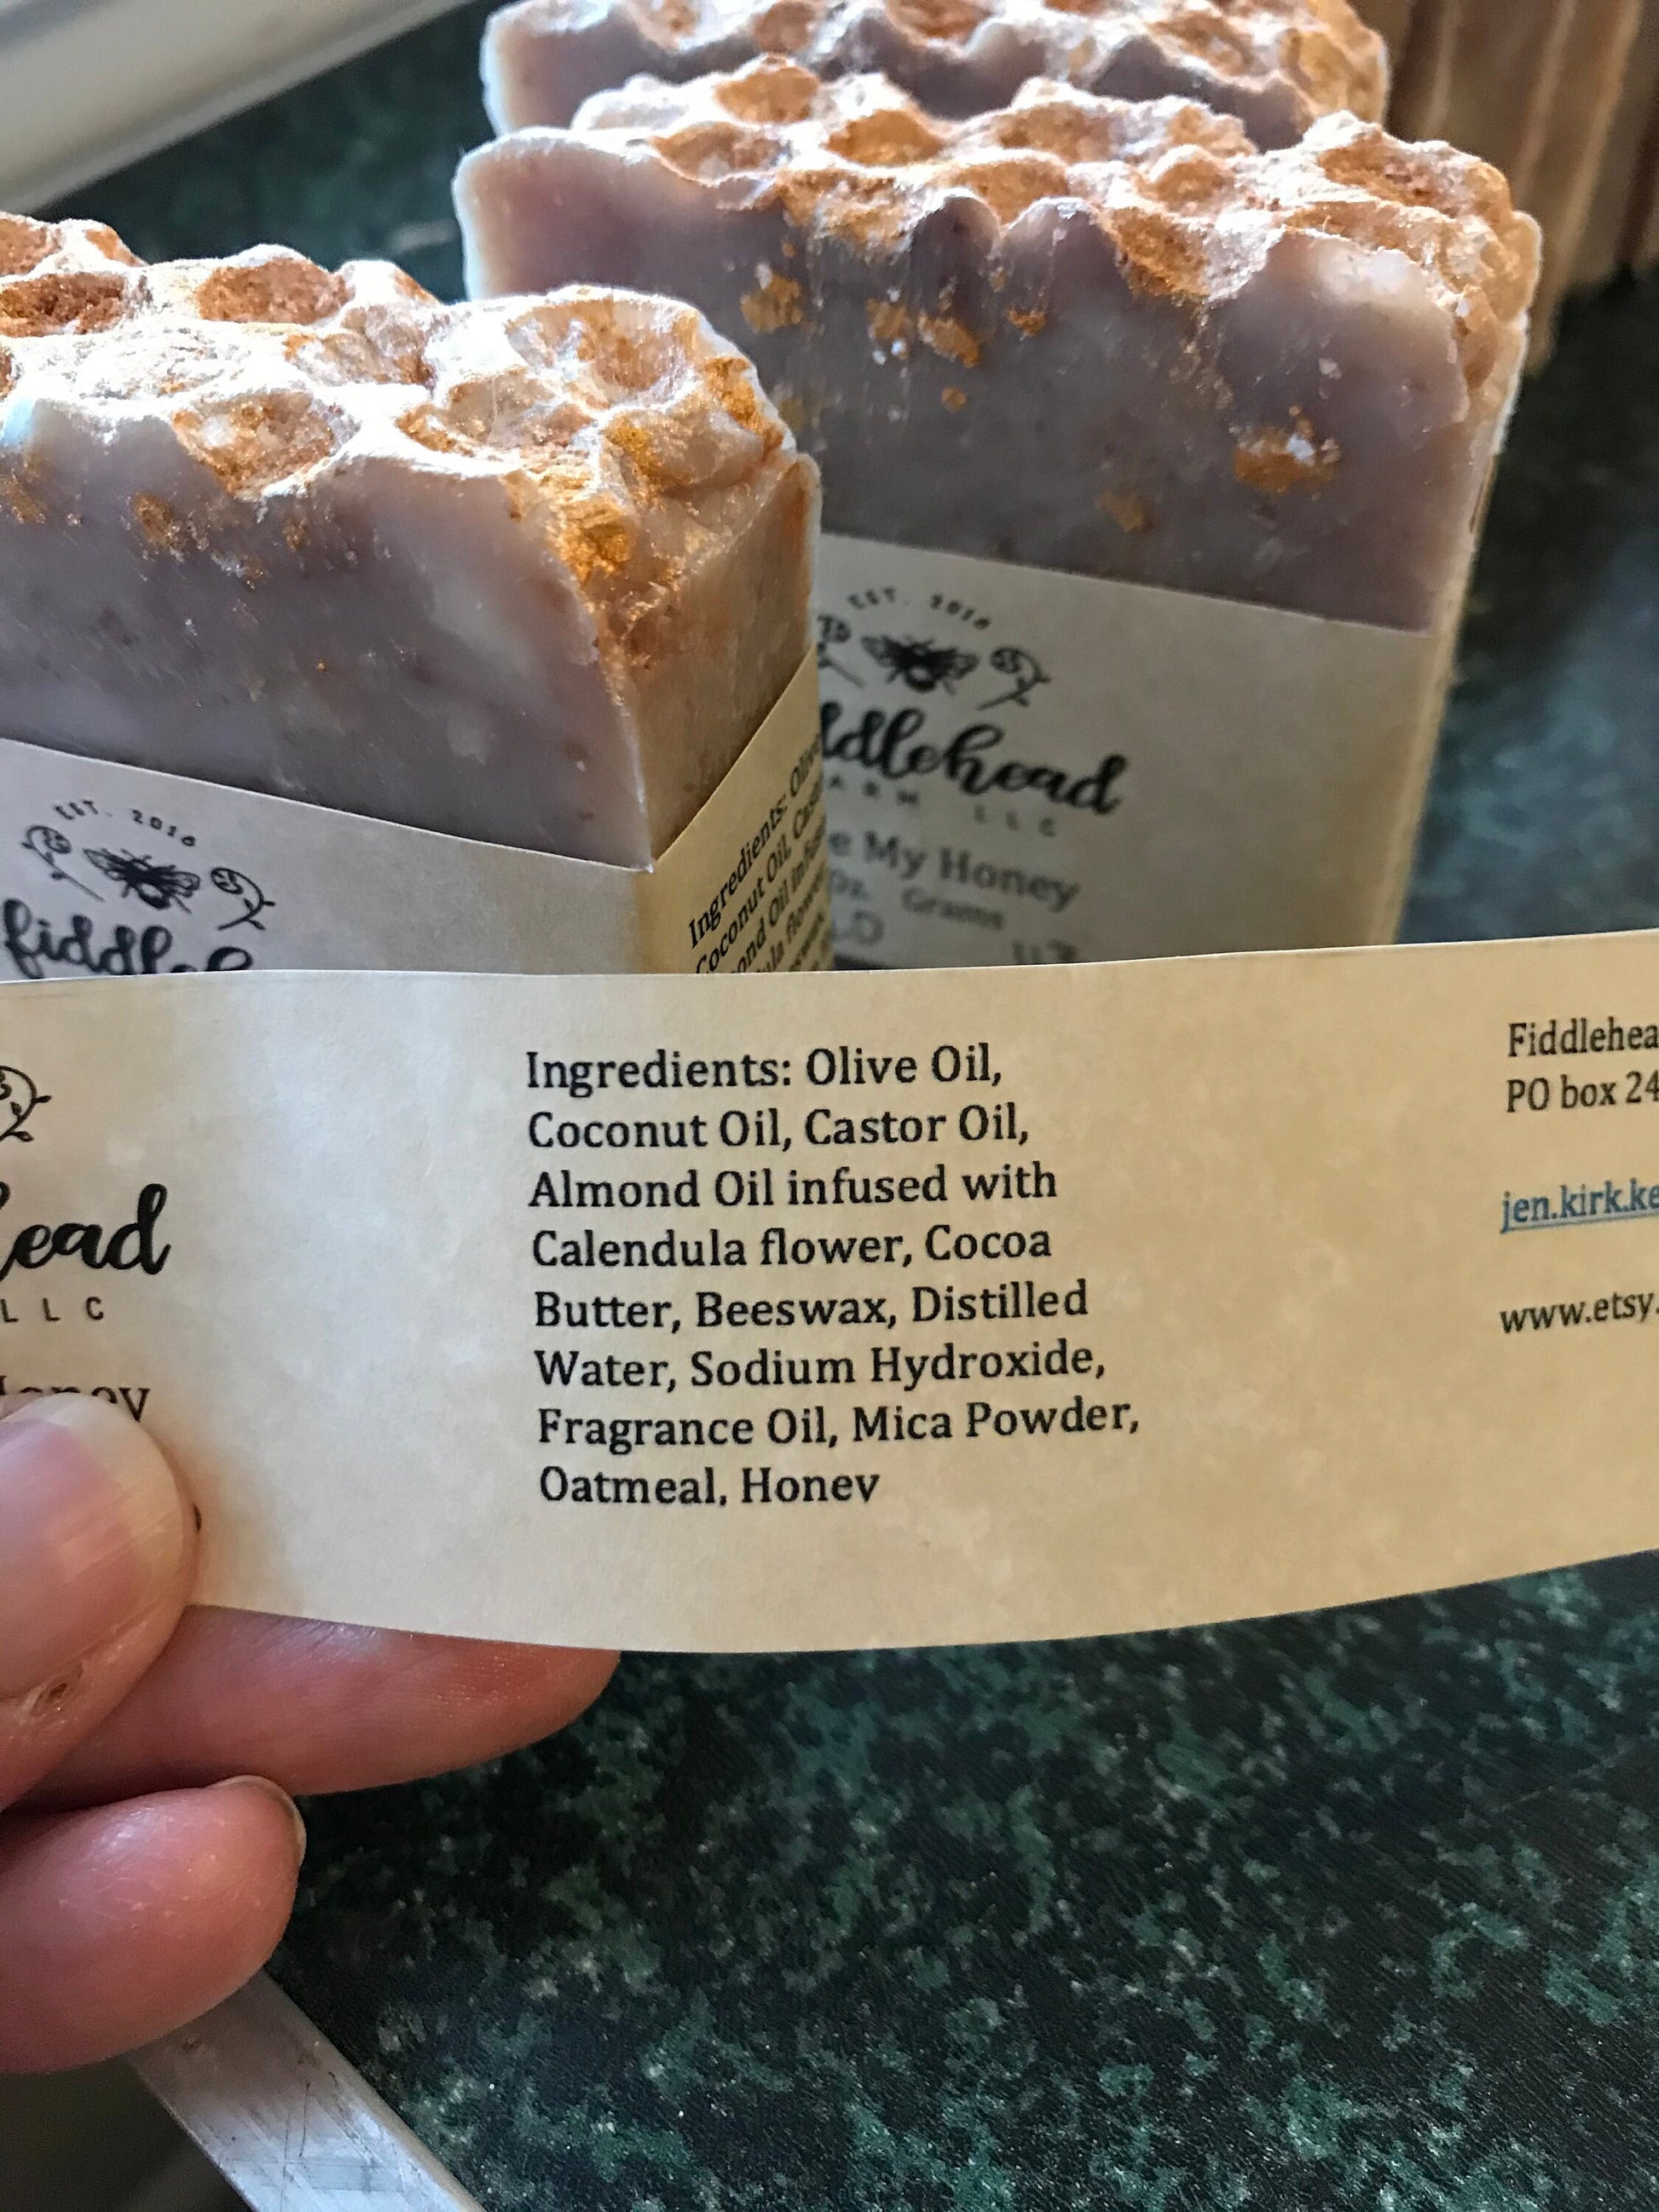 Soap- Oatmeal Honey